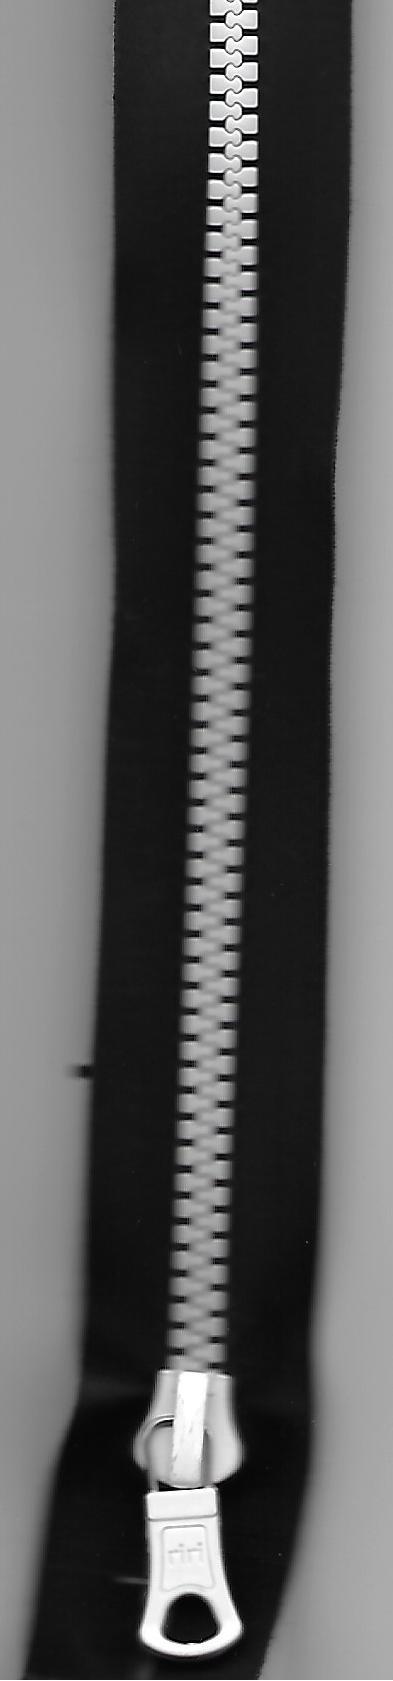 Reissverschluss, AquaZIP 6, Kunststoffzacken, teilbar, schwarz/weiss, Col. 8105, 80cm